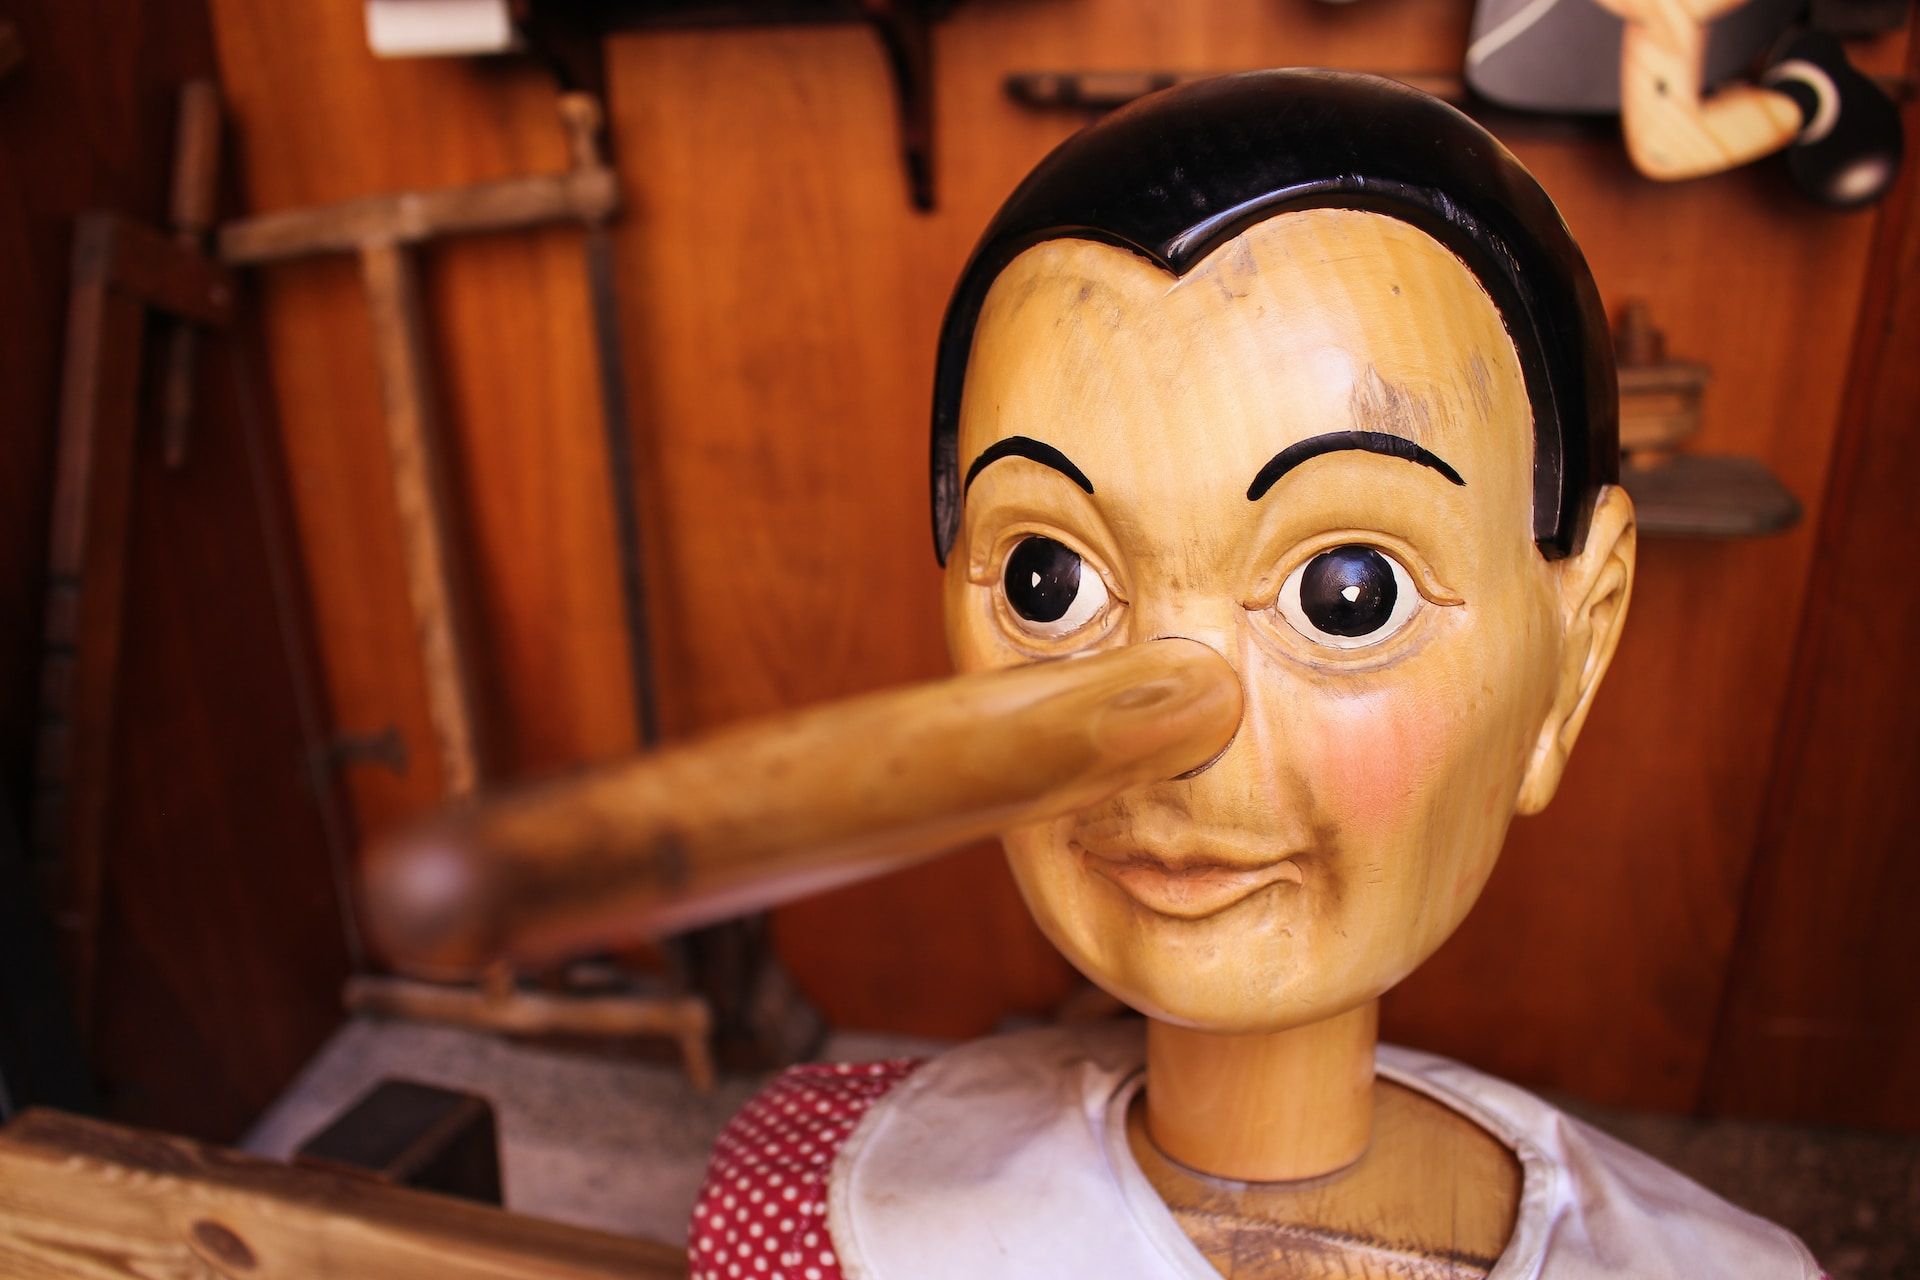 Un Pinocchio ancien dans un atelier de menuiserie - Photo de Jametlene Reskp sur https://unsplash.com/fr/photos/Q79XFGuTFfM